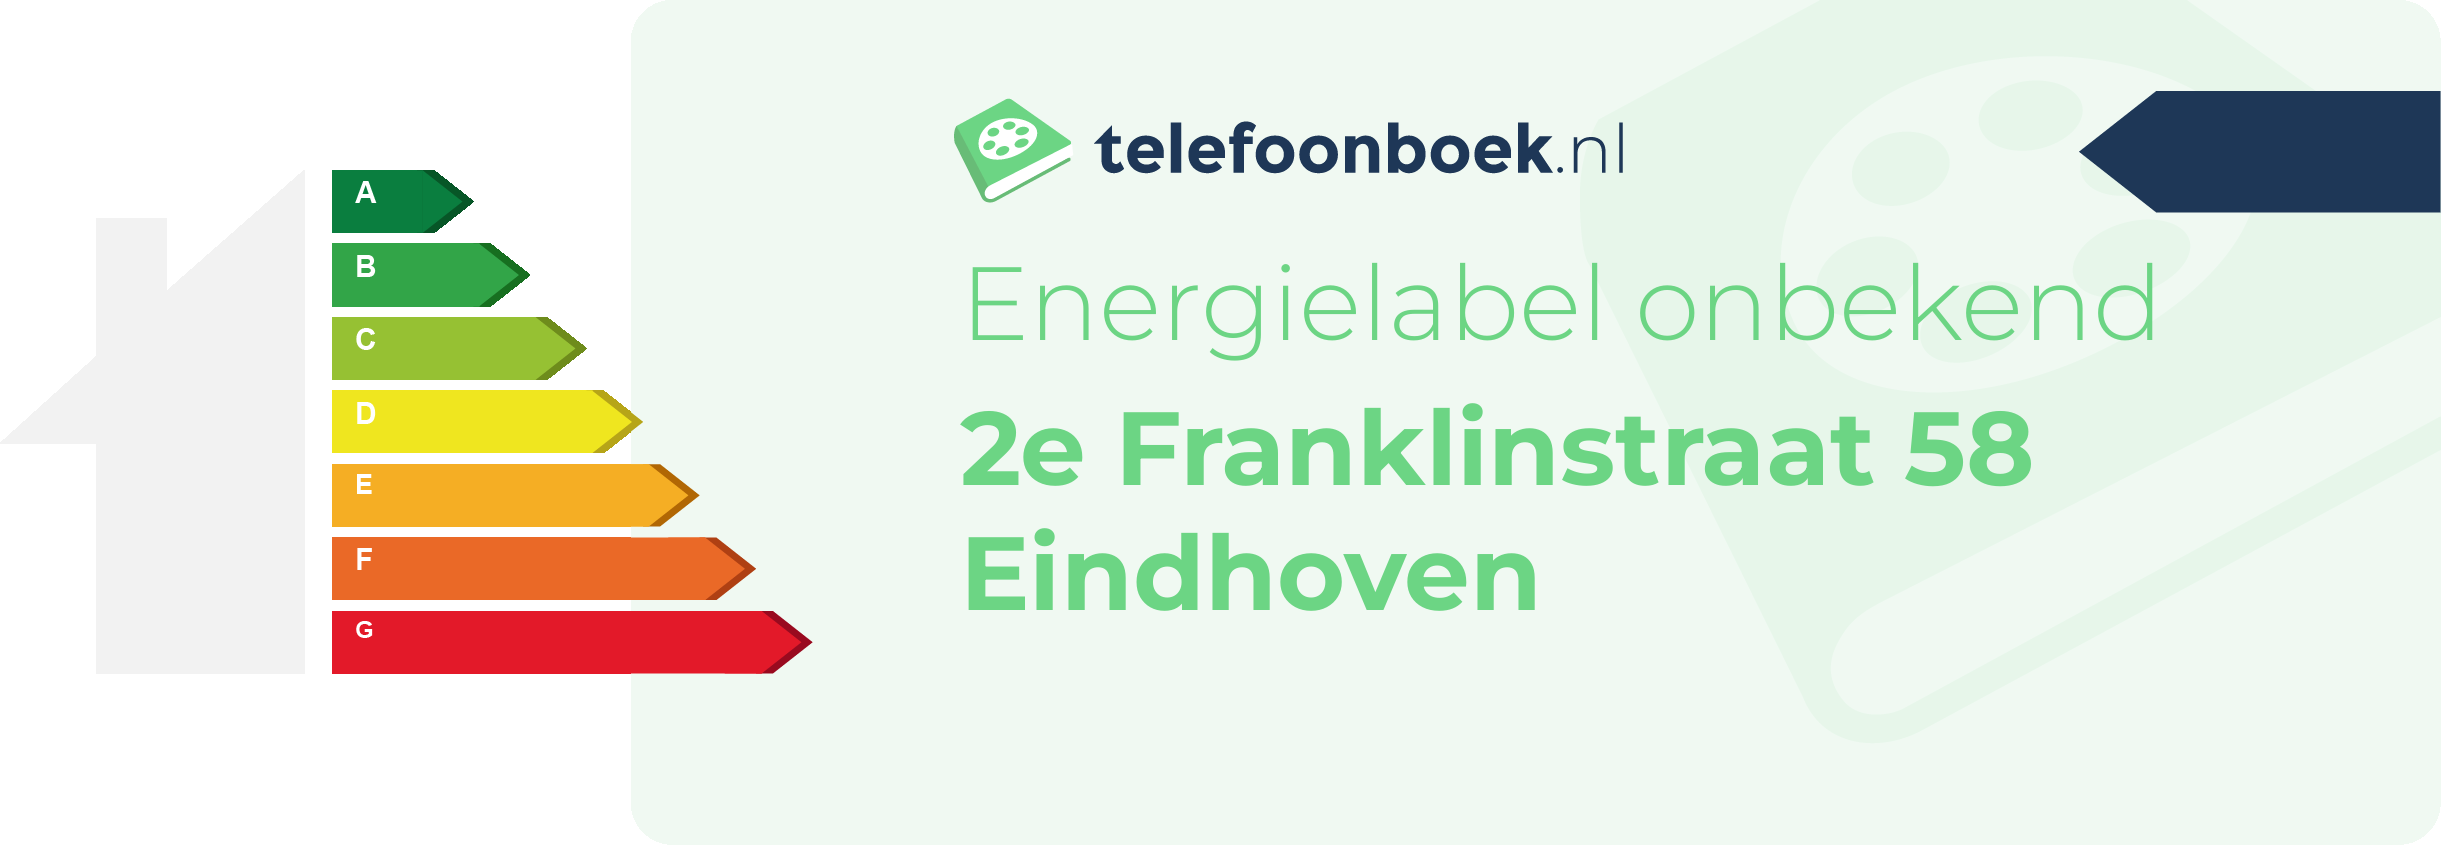 Energielabel 2e Franklinstraat 58 Eindhoven